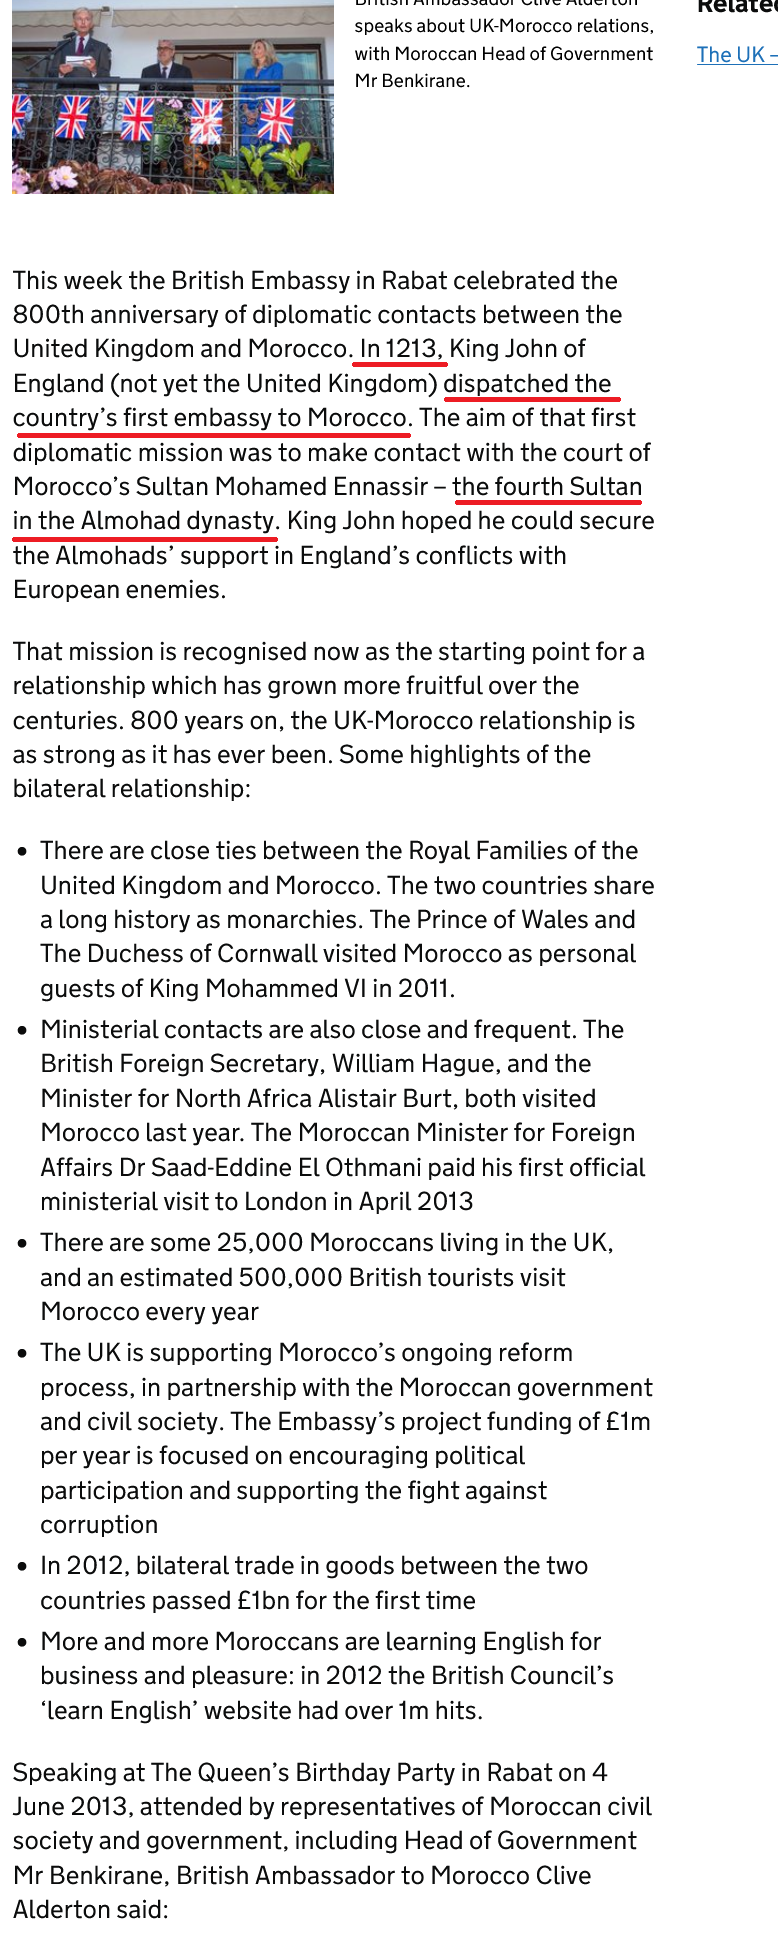 Screenshot-2023-03-07-at-19-11-48-800th-anniversary-of-UK-Morocco-ties.png